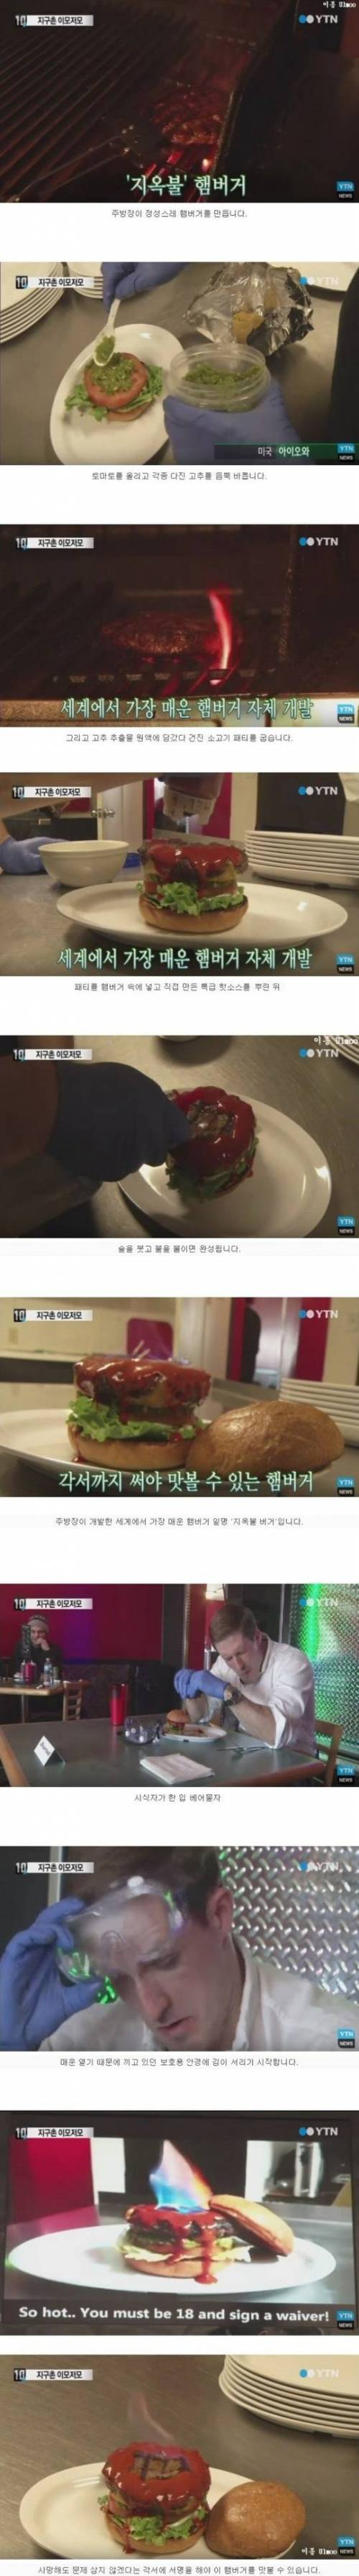 각서에 서명해야 먹을 수 있는 햄버거.jpg